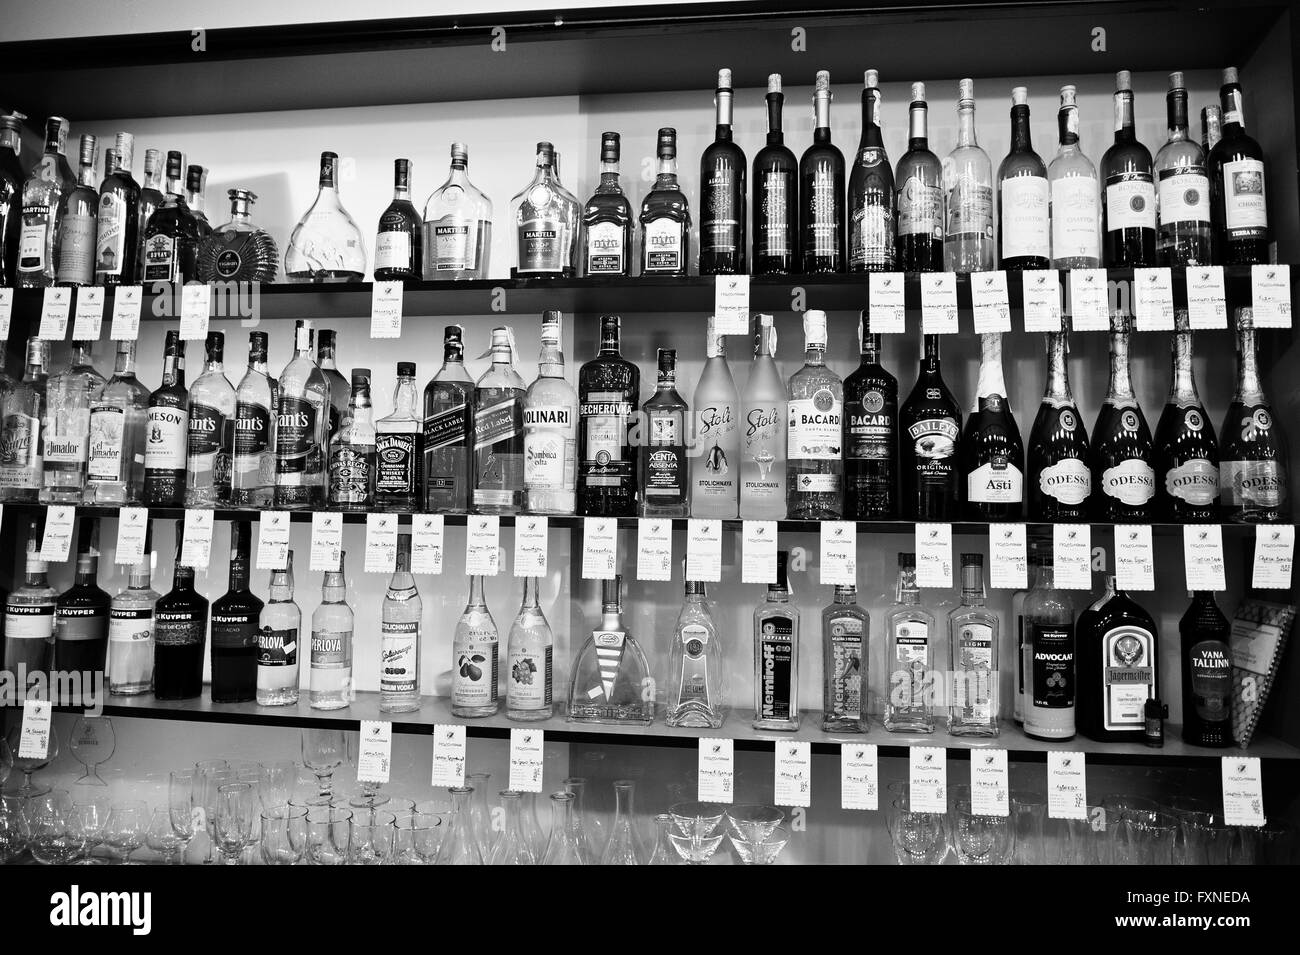 Kiew, UKRAINE - 25. März 2016: Diverse Flaschen alkoholische Getränke in der Bar auf dem Regal. Stockfoto